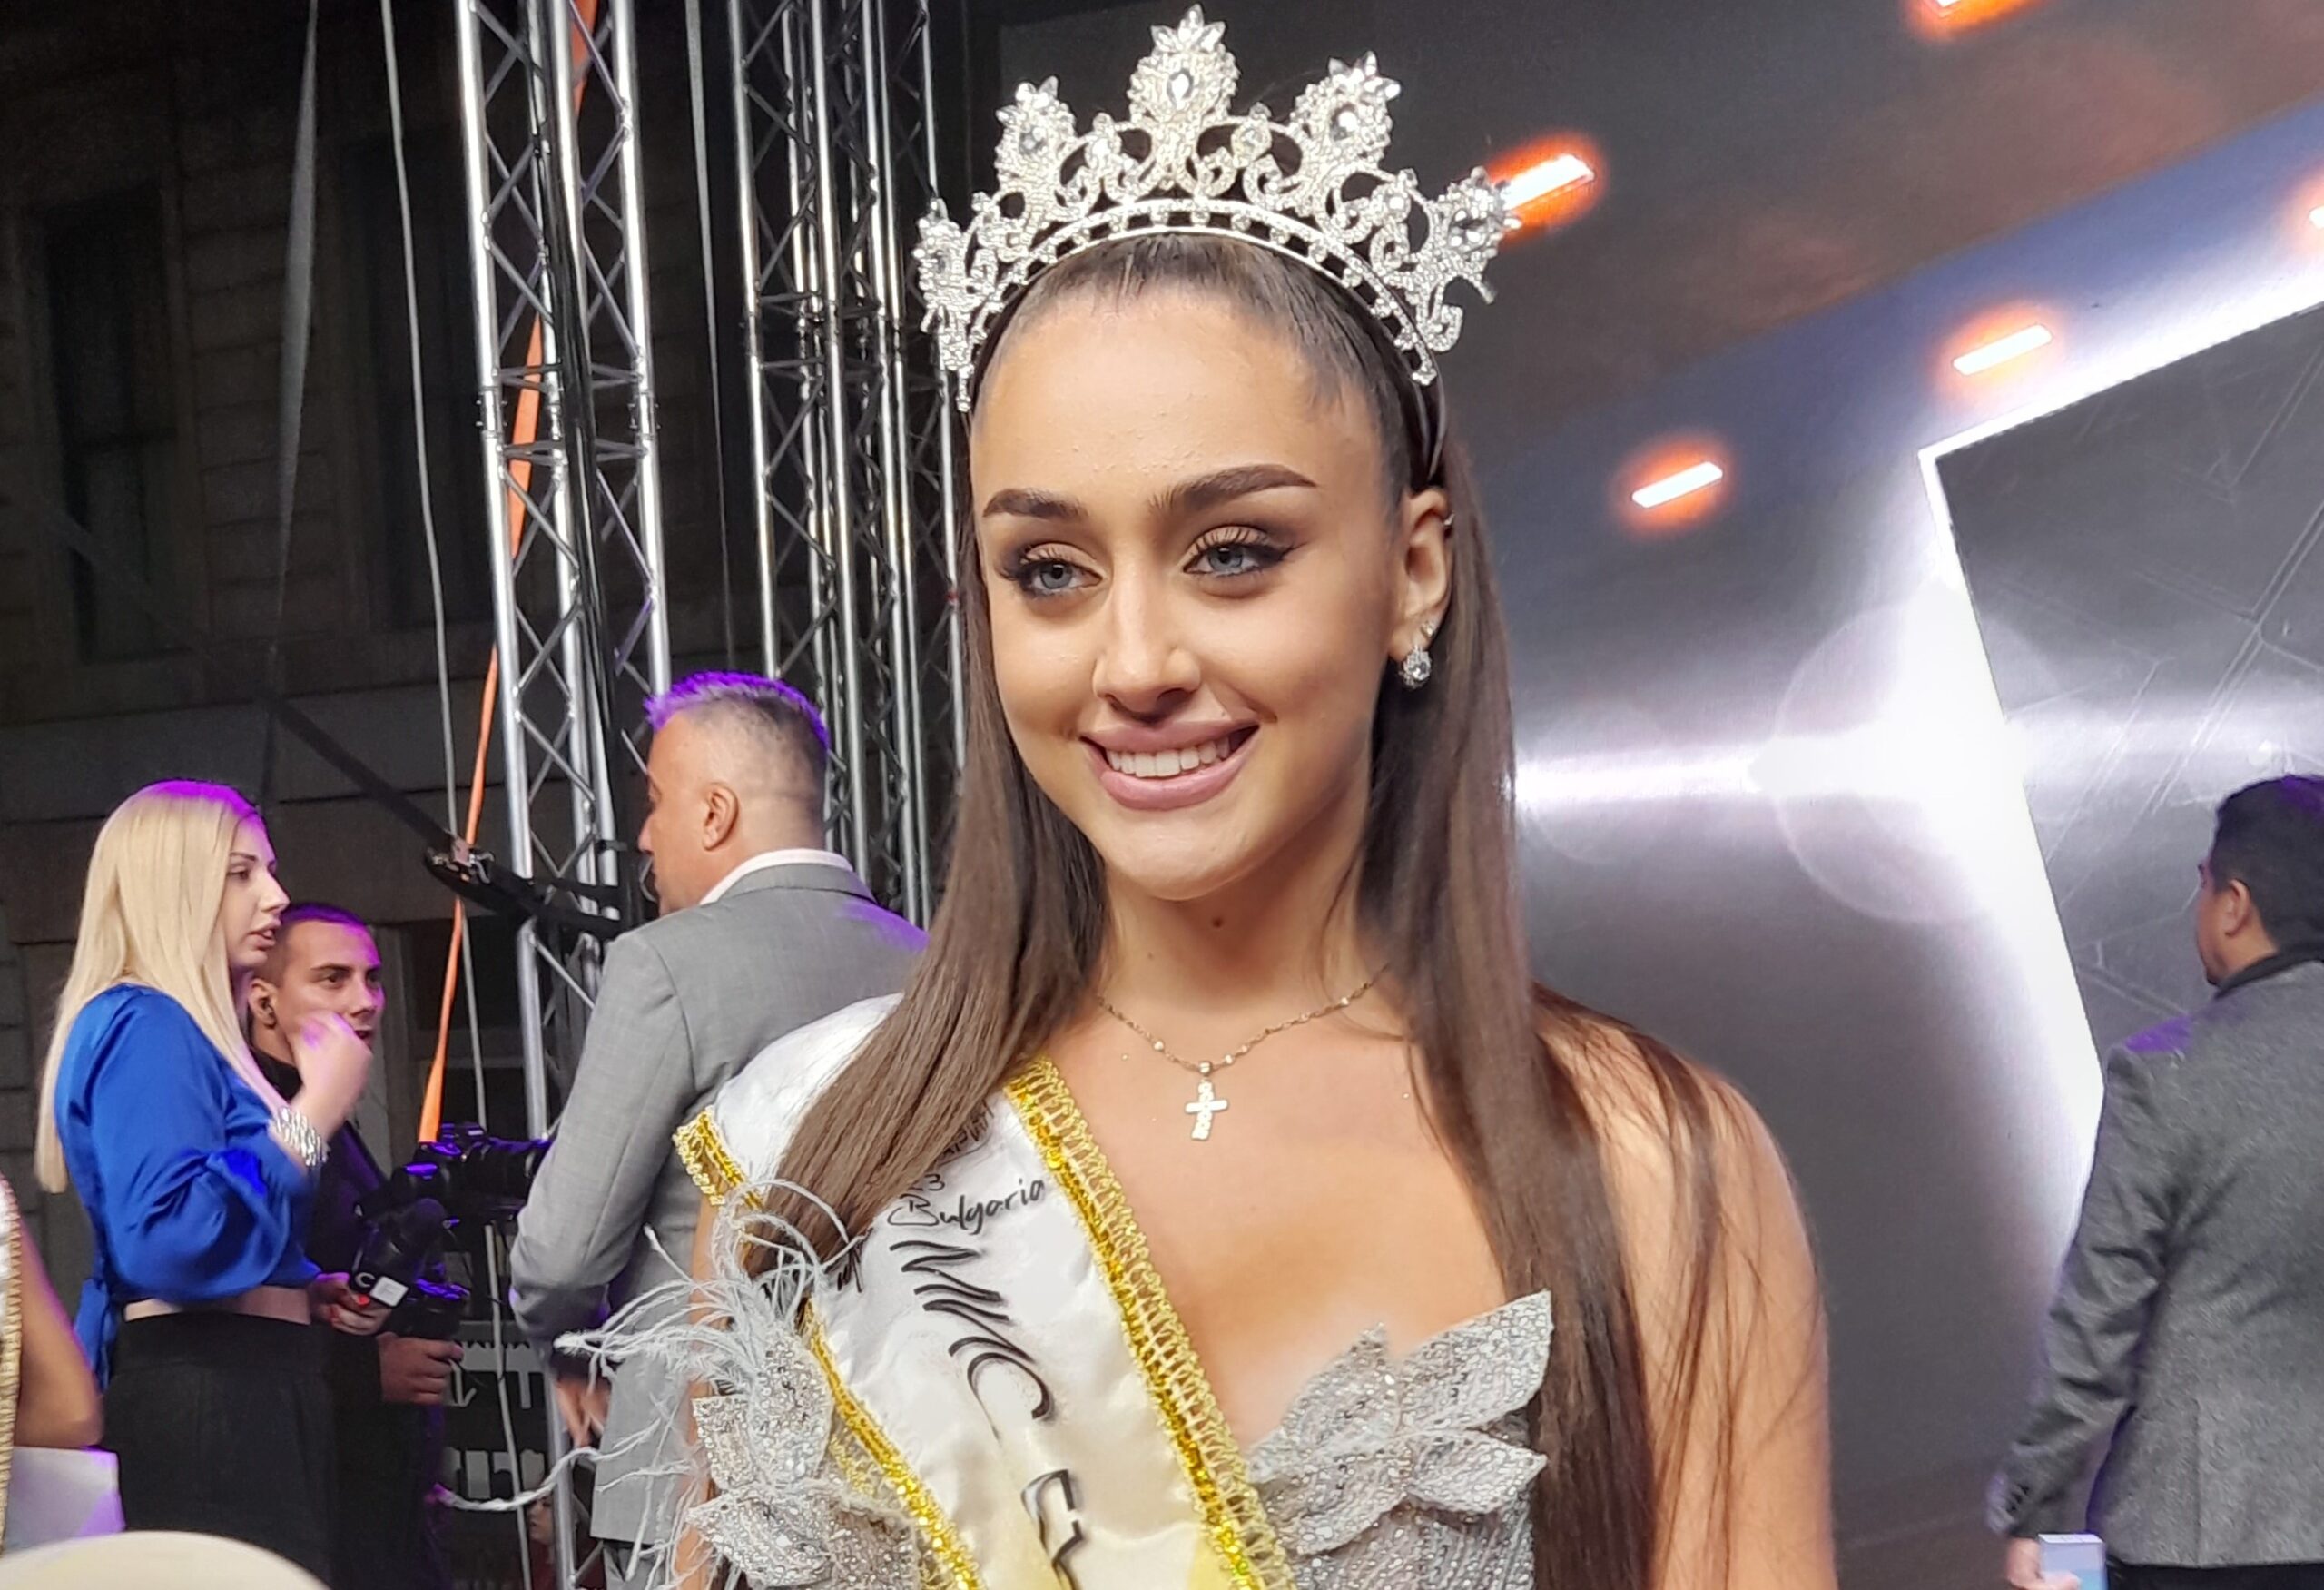 Изненада: “Мис България” отне короната от победителката с украински корени Елизабет Кравец. Причината!